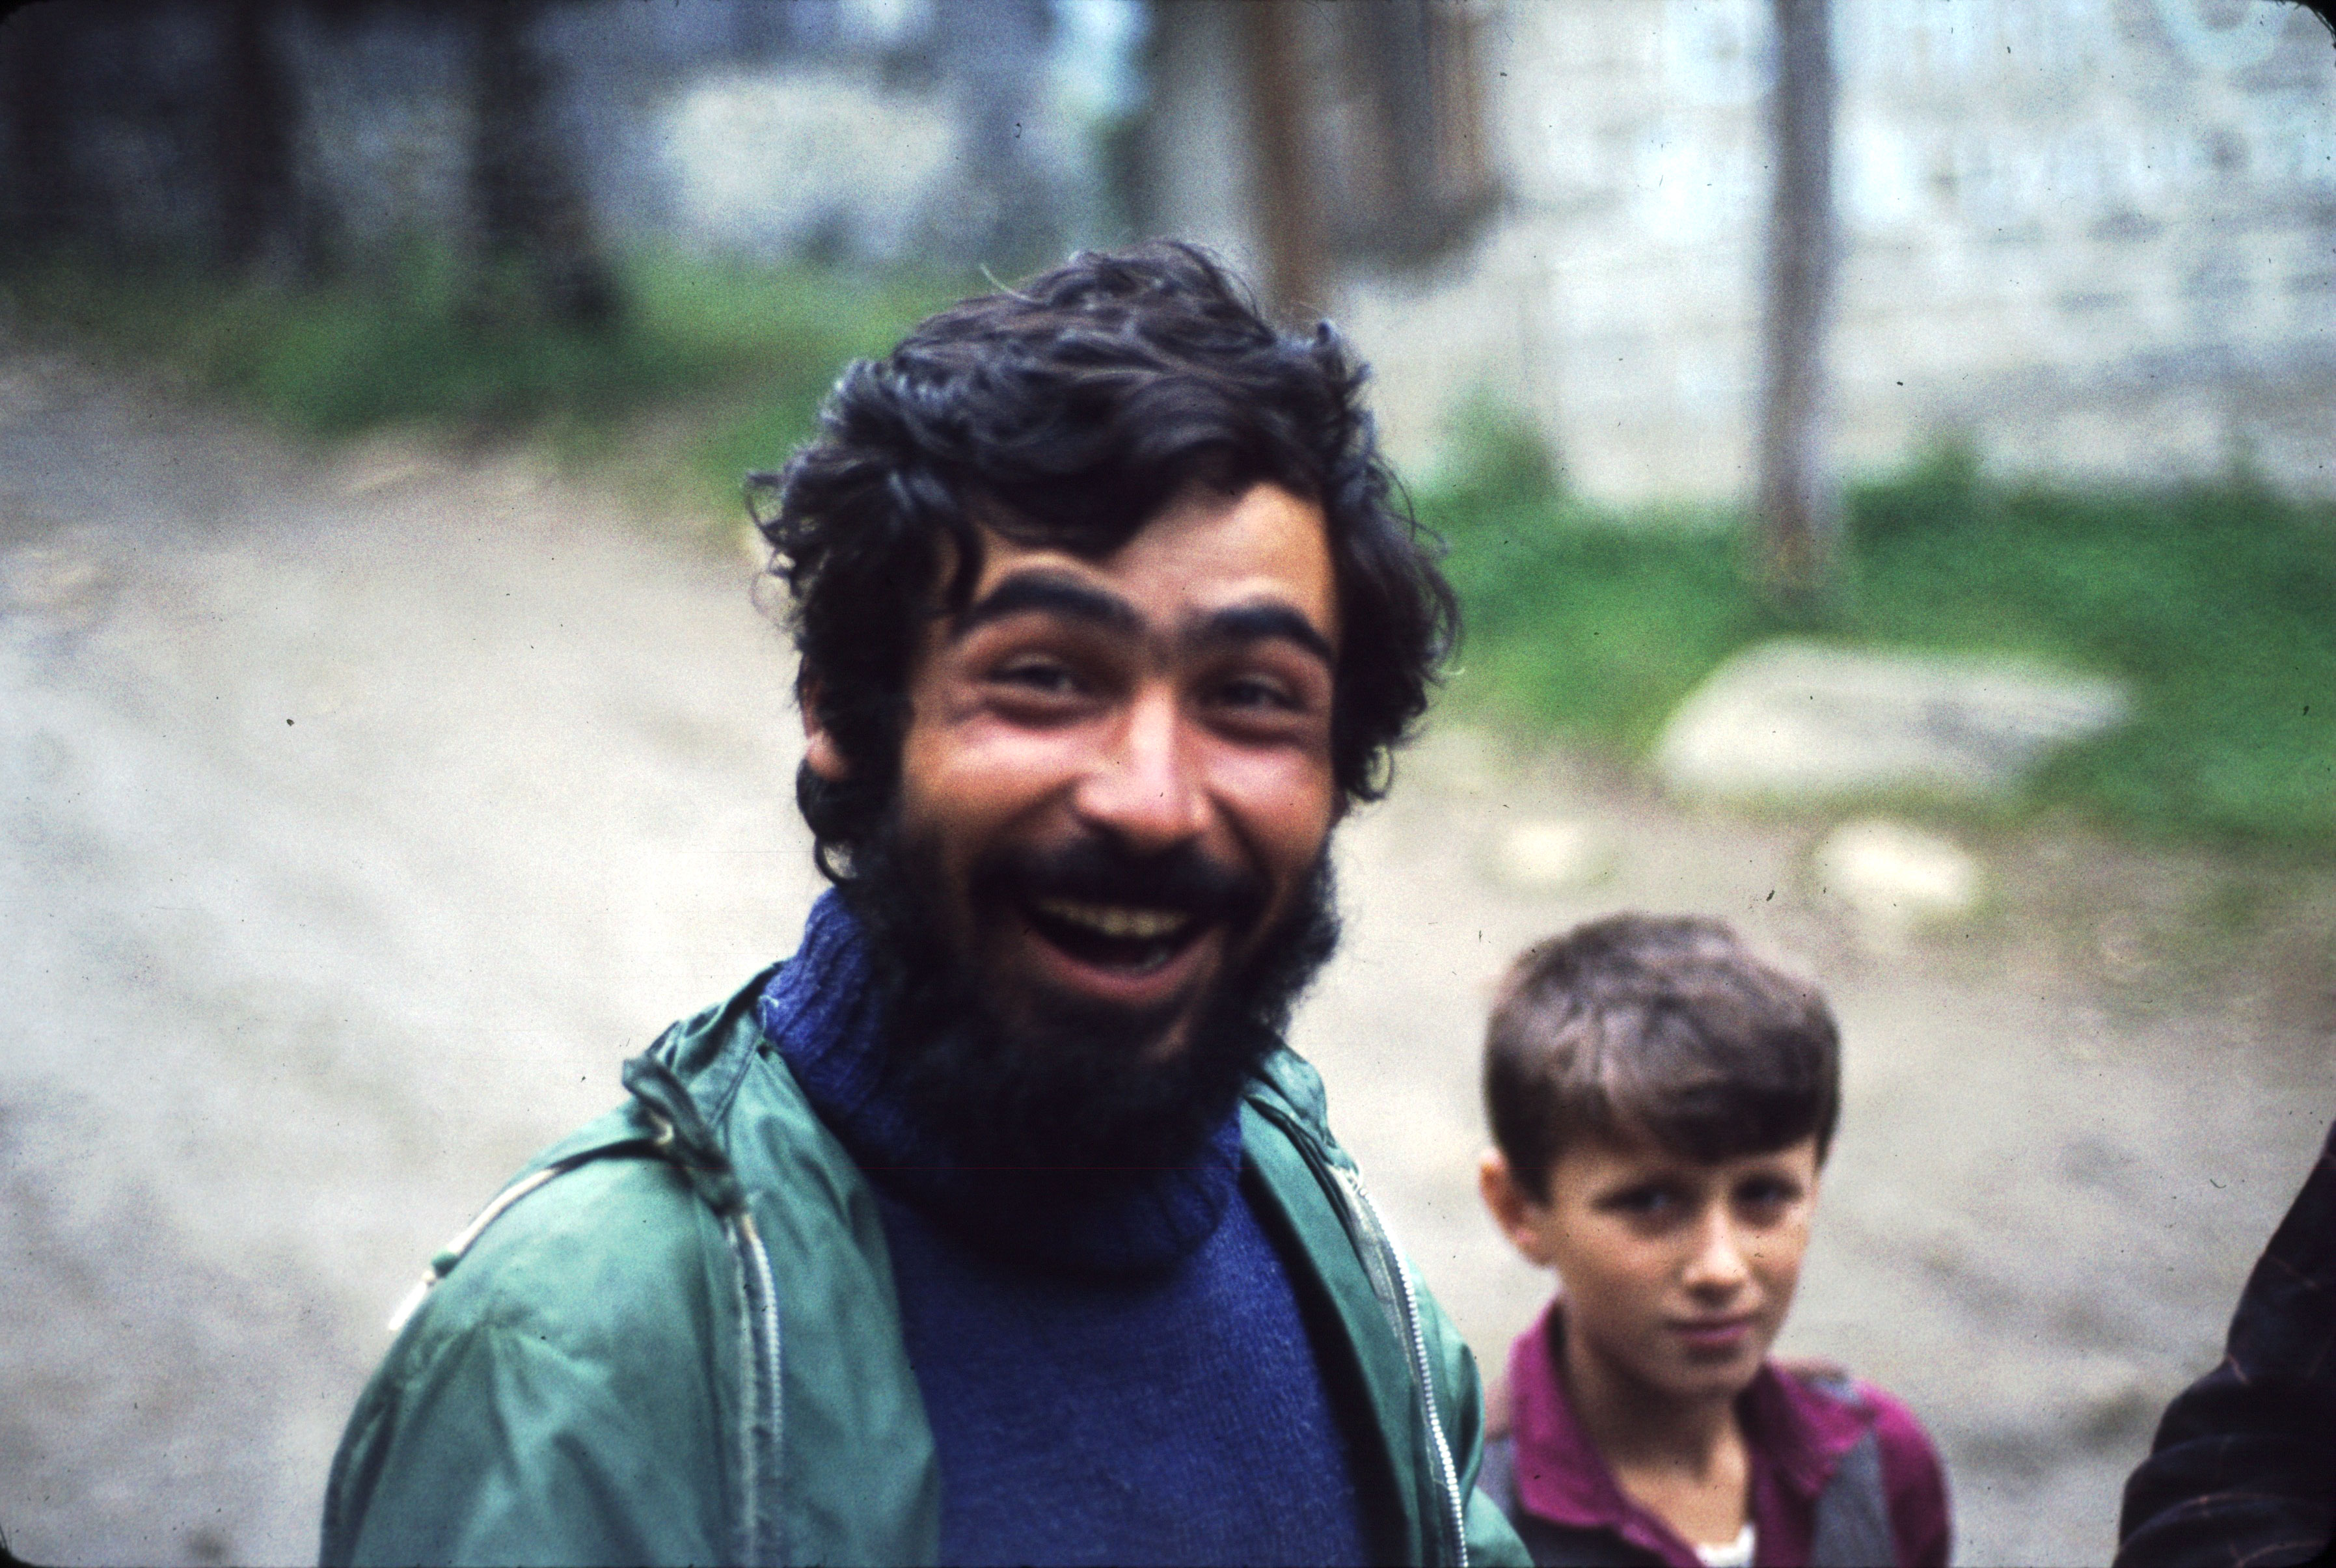 1989 sensinde Ağrı’da yaşamını yitiren Recep Çatak. 1983 Kaçkar Dağları faaliyeti Ayder. 